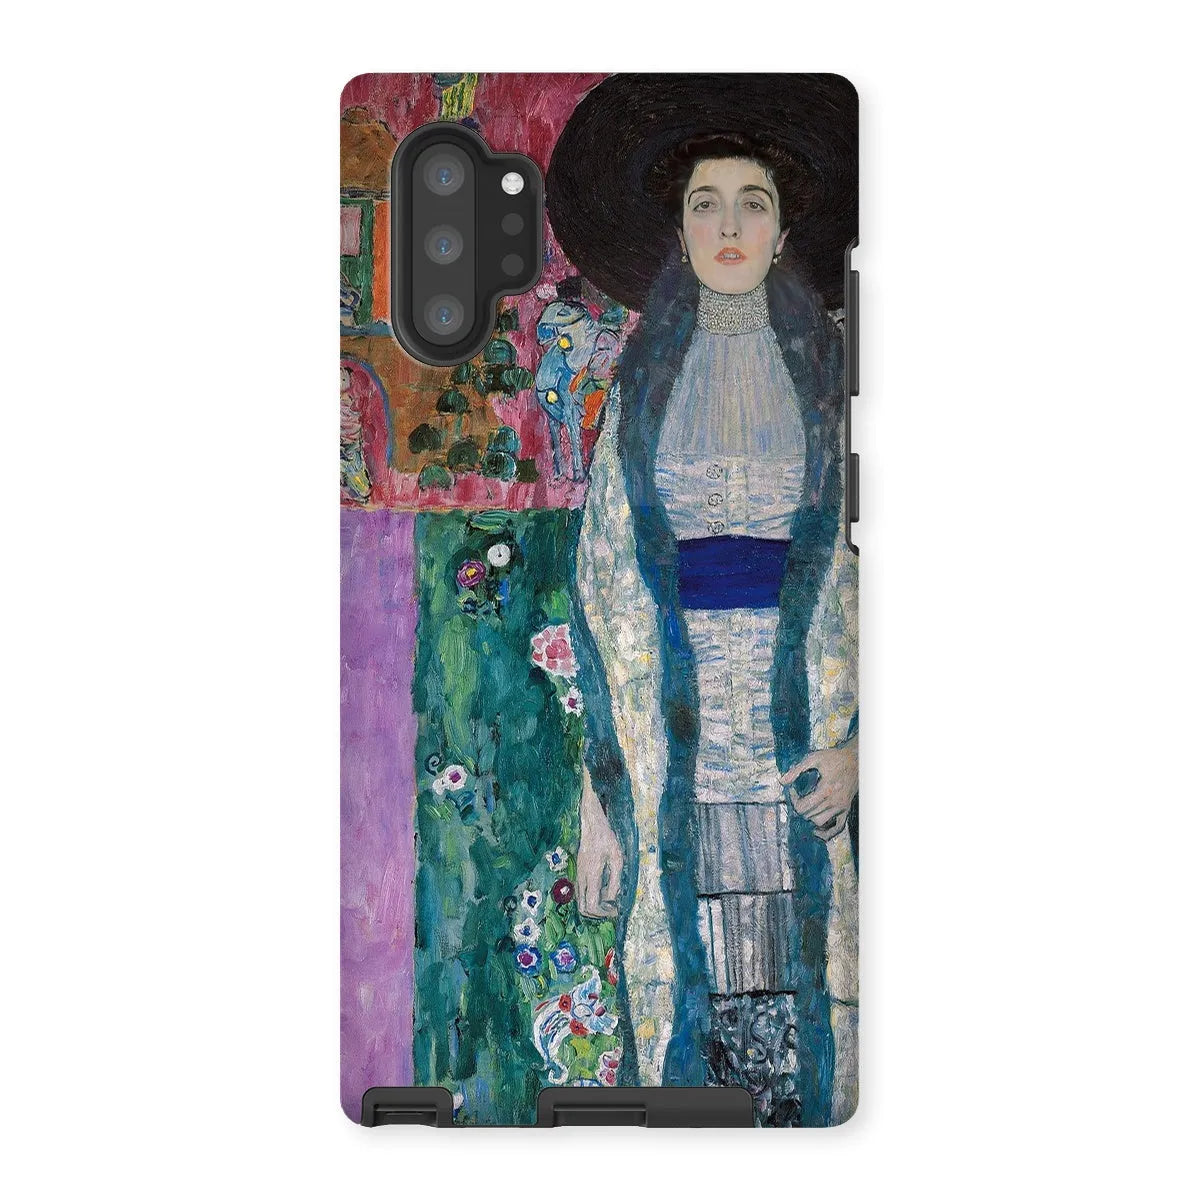 Adele Bloch-bauer - Gustav Klimt Portrait Art Phone Case - Samsung Galaxy Note 10p / Matte - Mobile Phone Cases